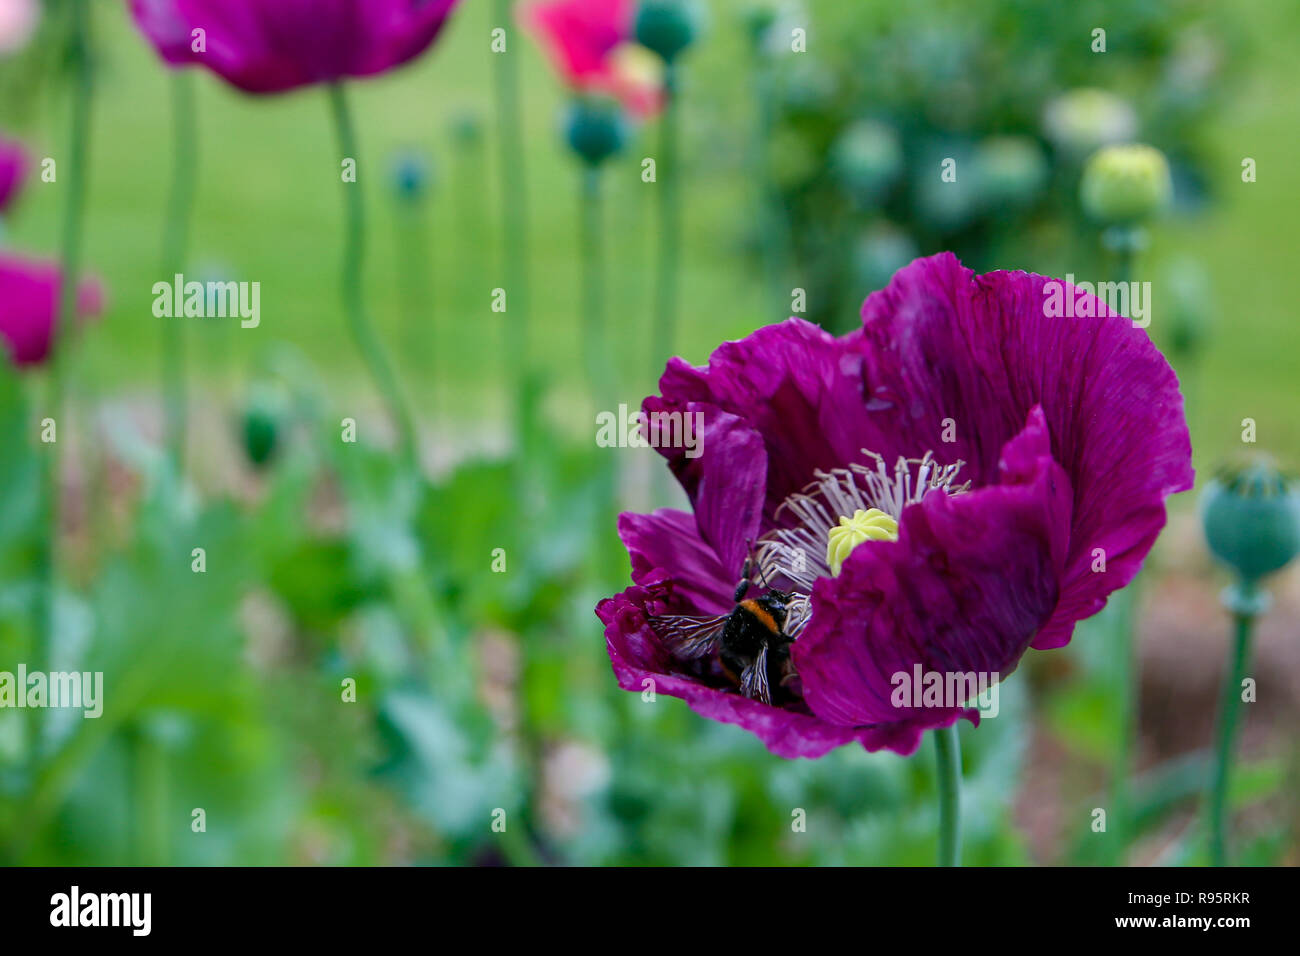 Belles fleurs de pavot aux couleurs éclatantes dans un jardin Banque D'Images